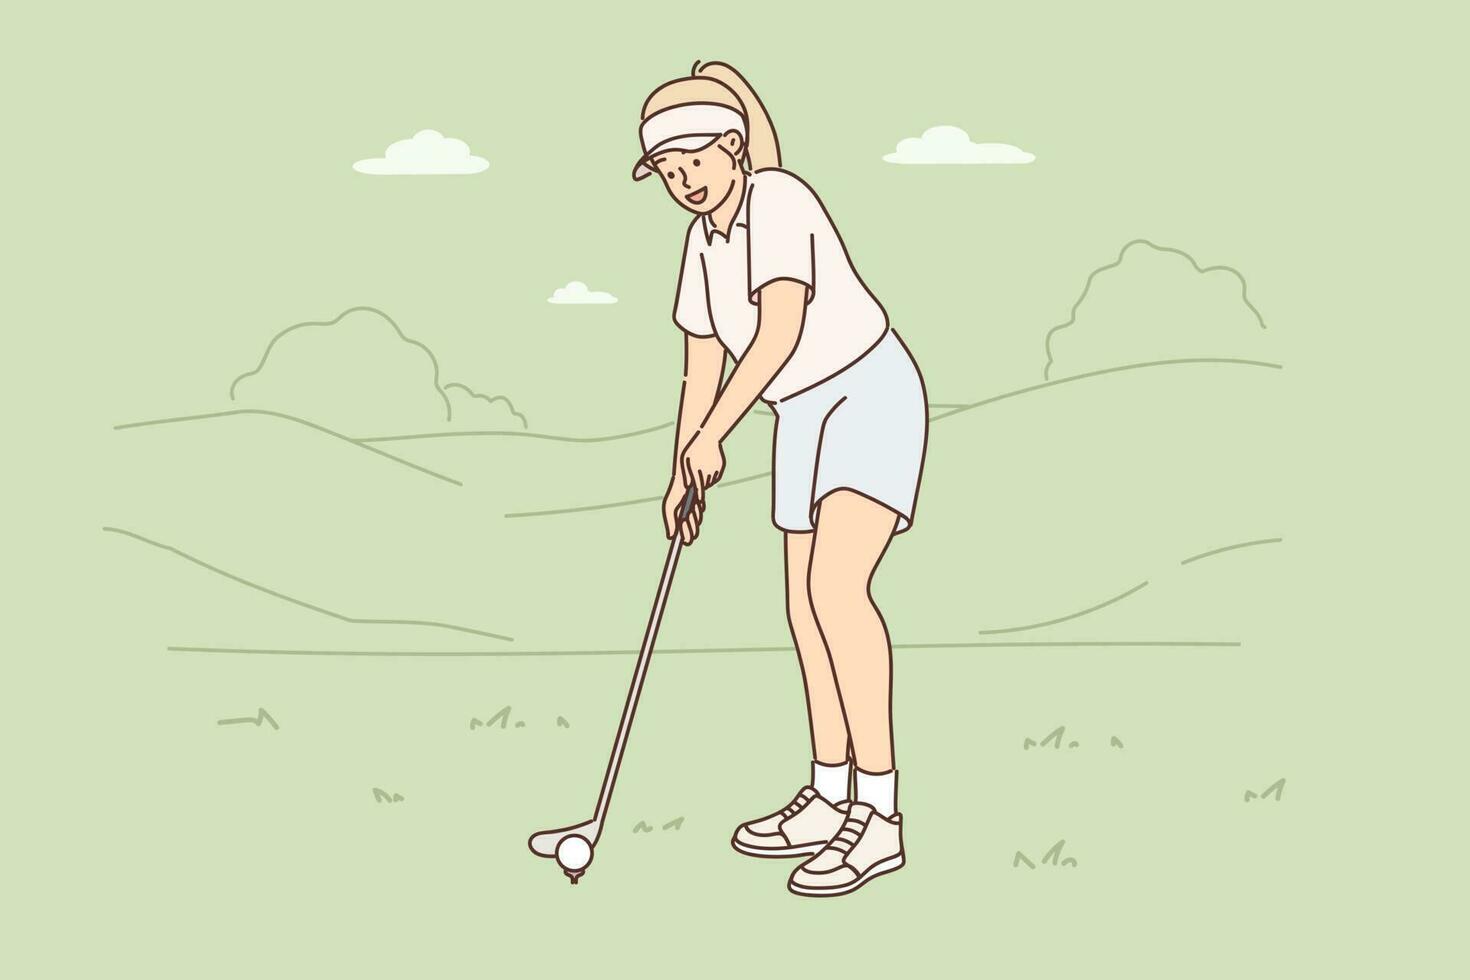 Frau ist spielen Golf auf Grün Rasen vorbereiten zu schlagen mit Verein zu stellen Ball in Loch. Mädchen nimmt teil im Fachmann Golf Turnier und will zu Sieg oder werden Champion im Wettbewerb. vektor